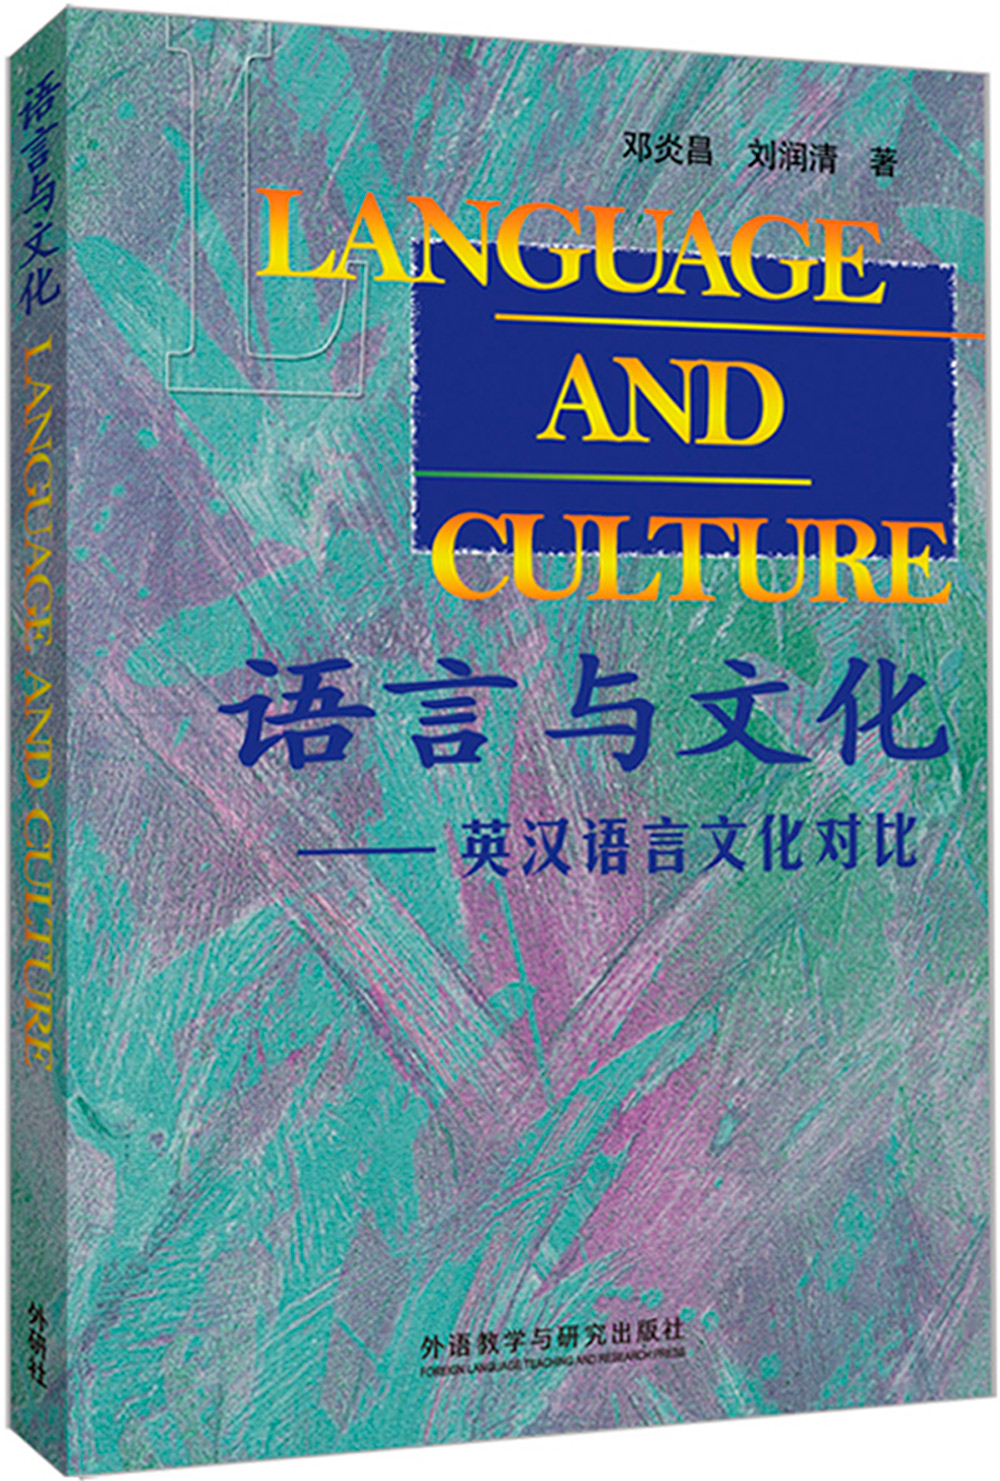 语言与文化-英汉语言文化对比(新版)正版